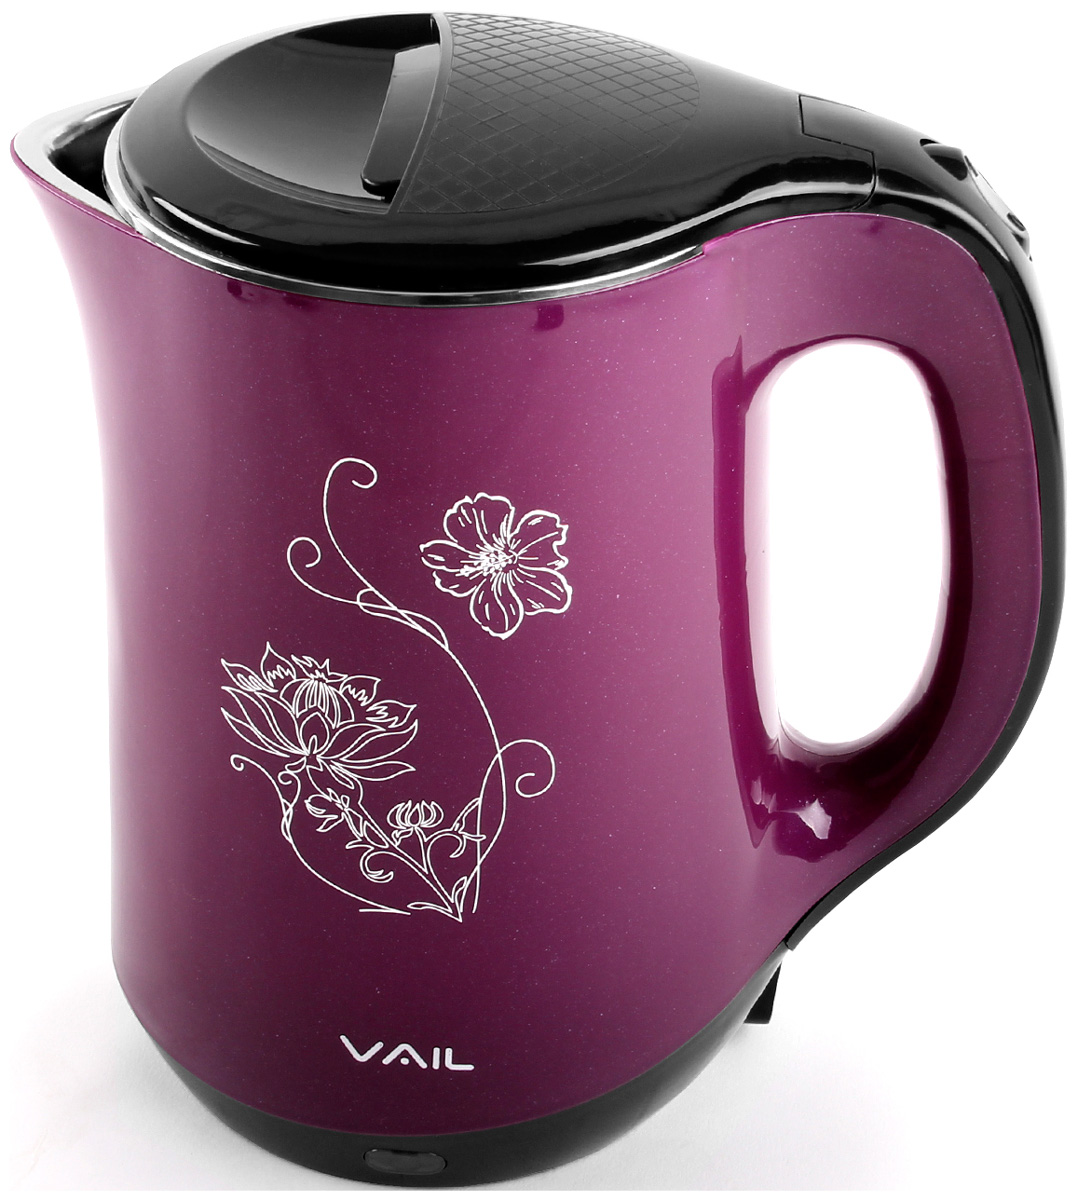 Чайник электрический Vail VL-5551 фиолетовый 1,8 л. чайник электрический vail vl 5507 1 8 л розовый